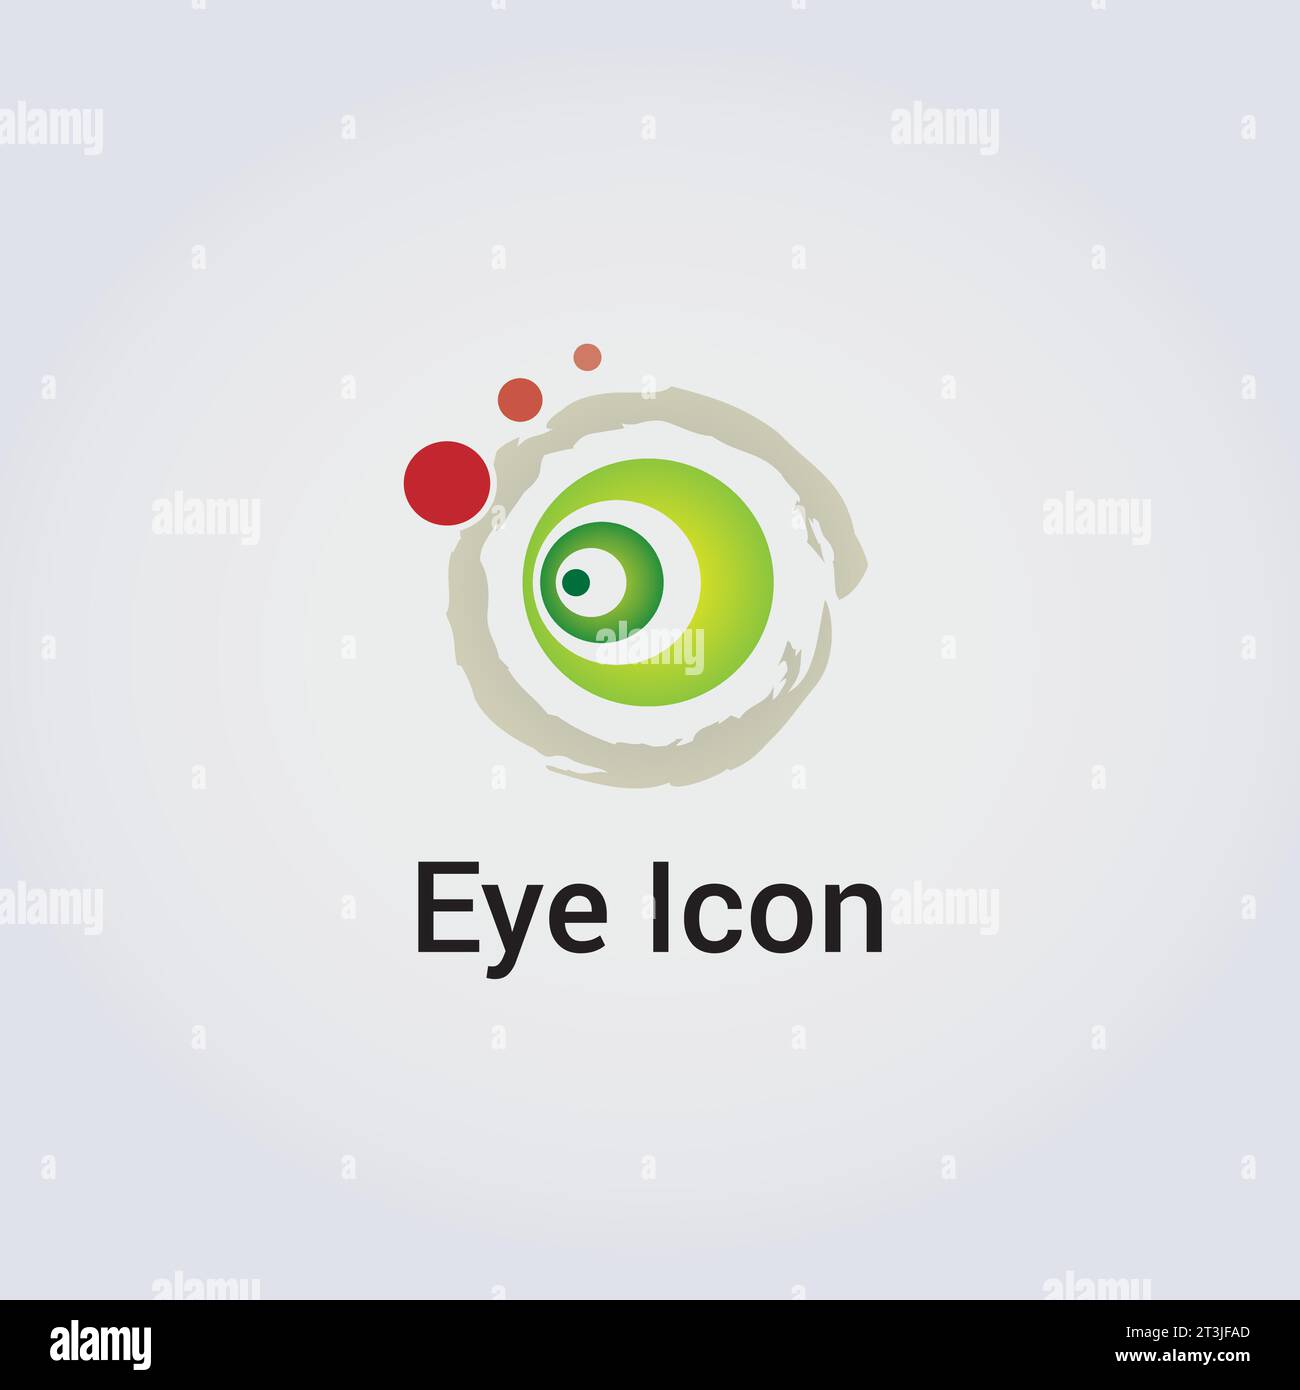 Icona occhio disegno del logo - modello astratto varie forme colori cerchio cerchio cerchio cerchio cerchio bellezza emblema simbolo - identità aziendale per le aziende Illustrazione Vettoriale